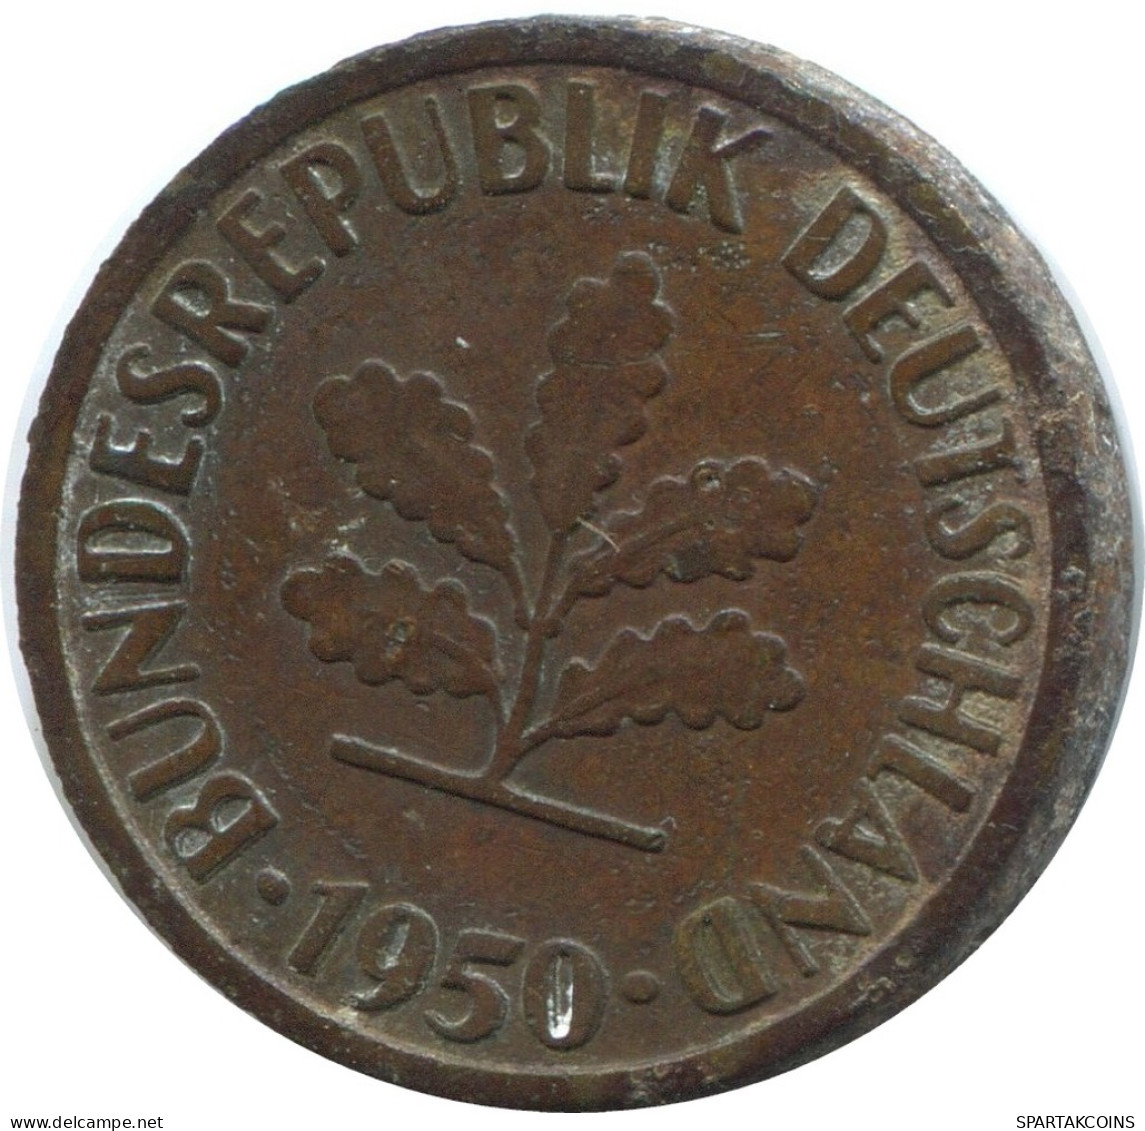 5 PFENNIG 1950 J WEST & UNIFIED GERMANY Coin #AD870.9.U - 5 Pfennig